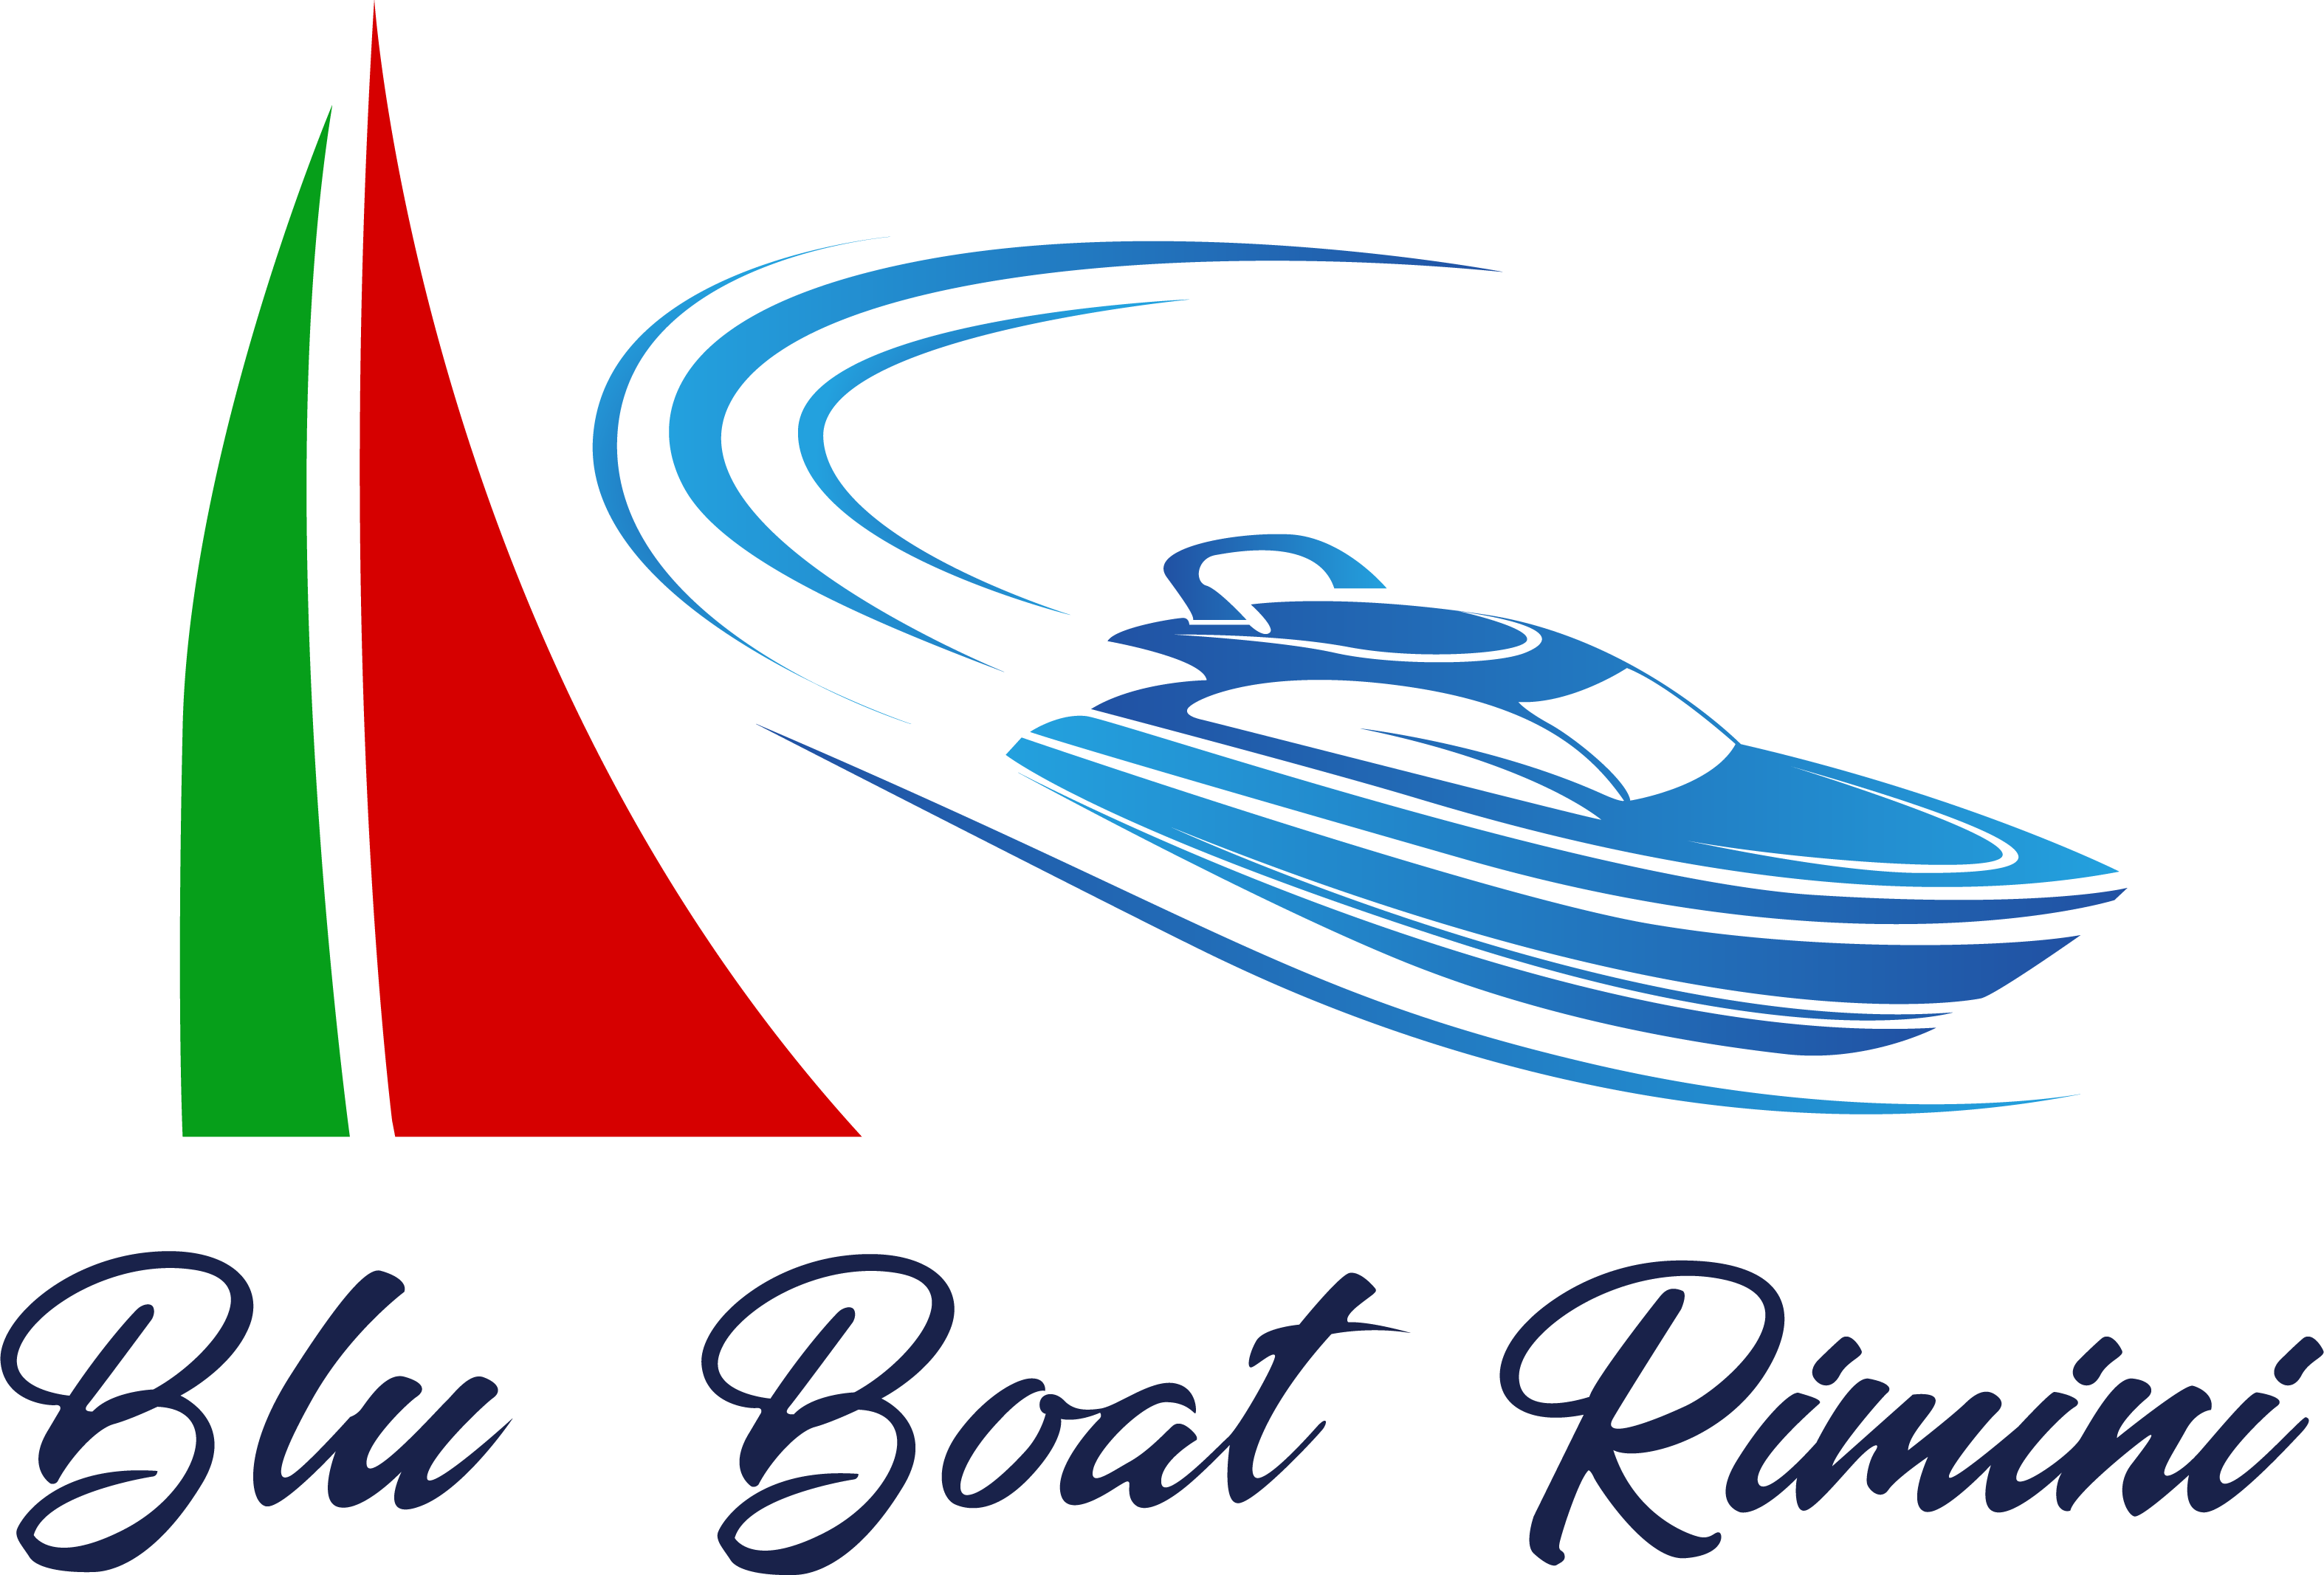 Blu Boat Rimini